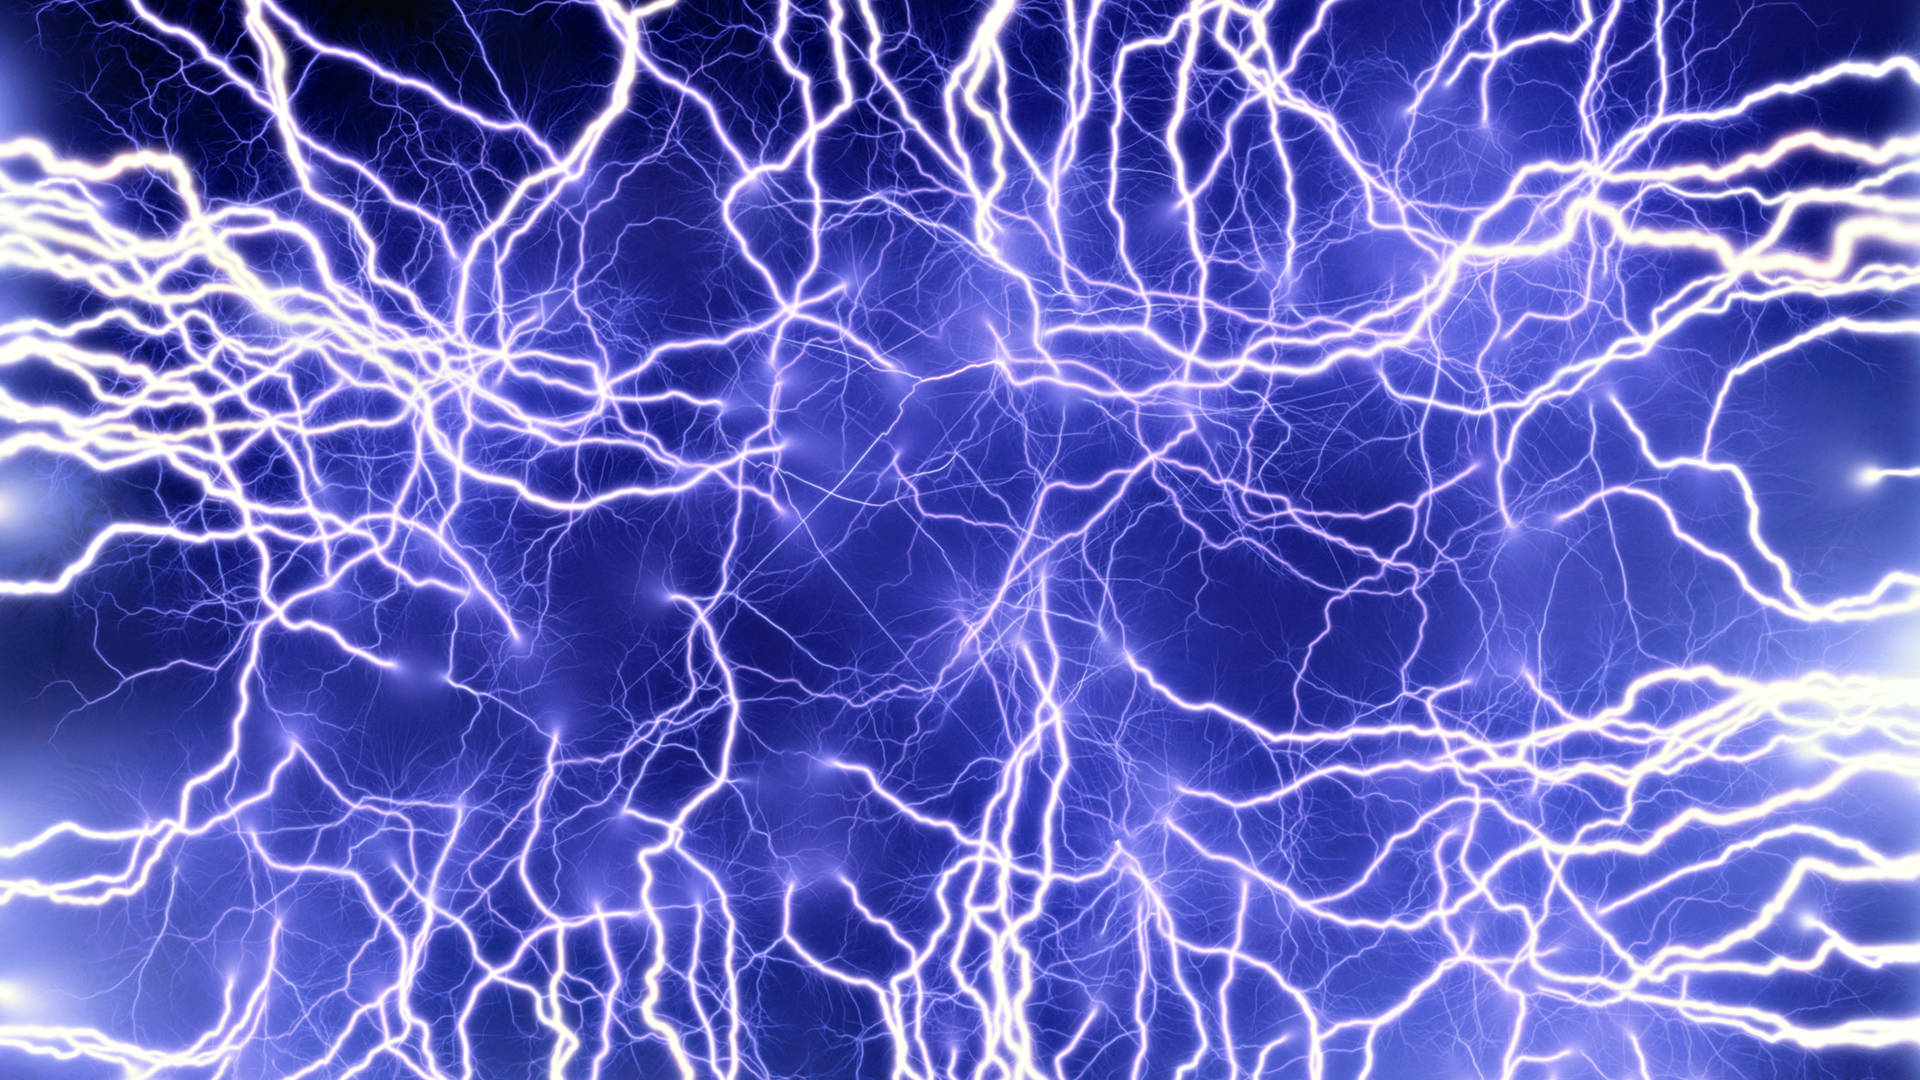 Thunderstorm Lightning Screen Wallpaper